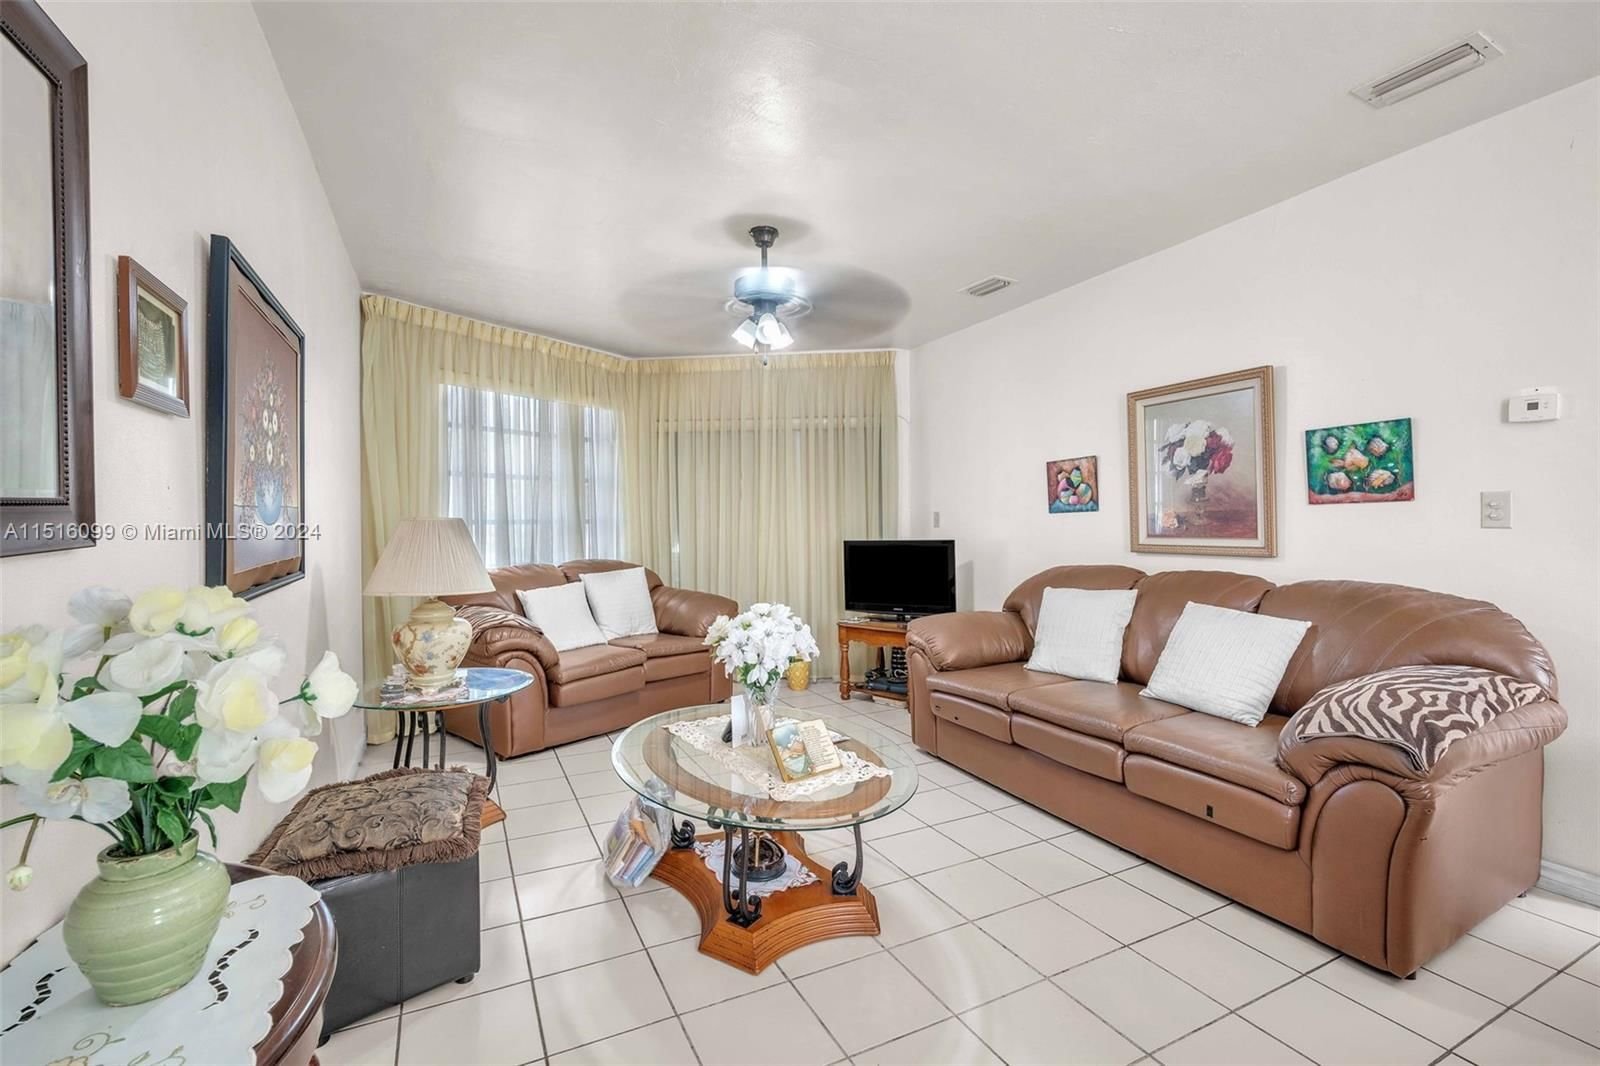 Real estate property located at 18726 18th Ave #221, Miami-Dade County, SKY LAKE GARDENS NO 4 CON, Miami, FL